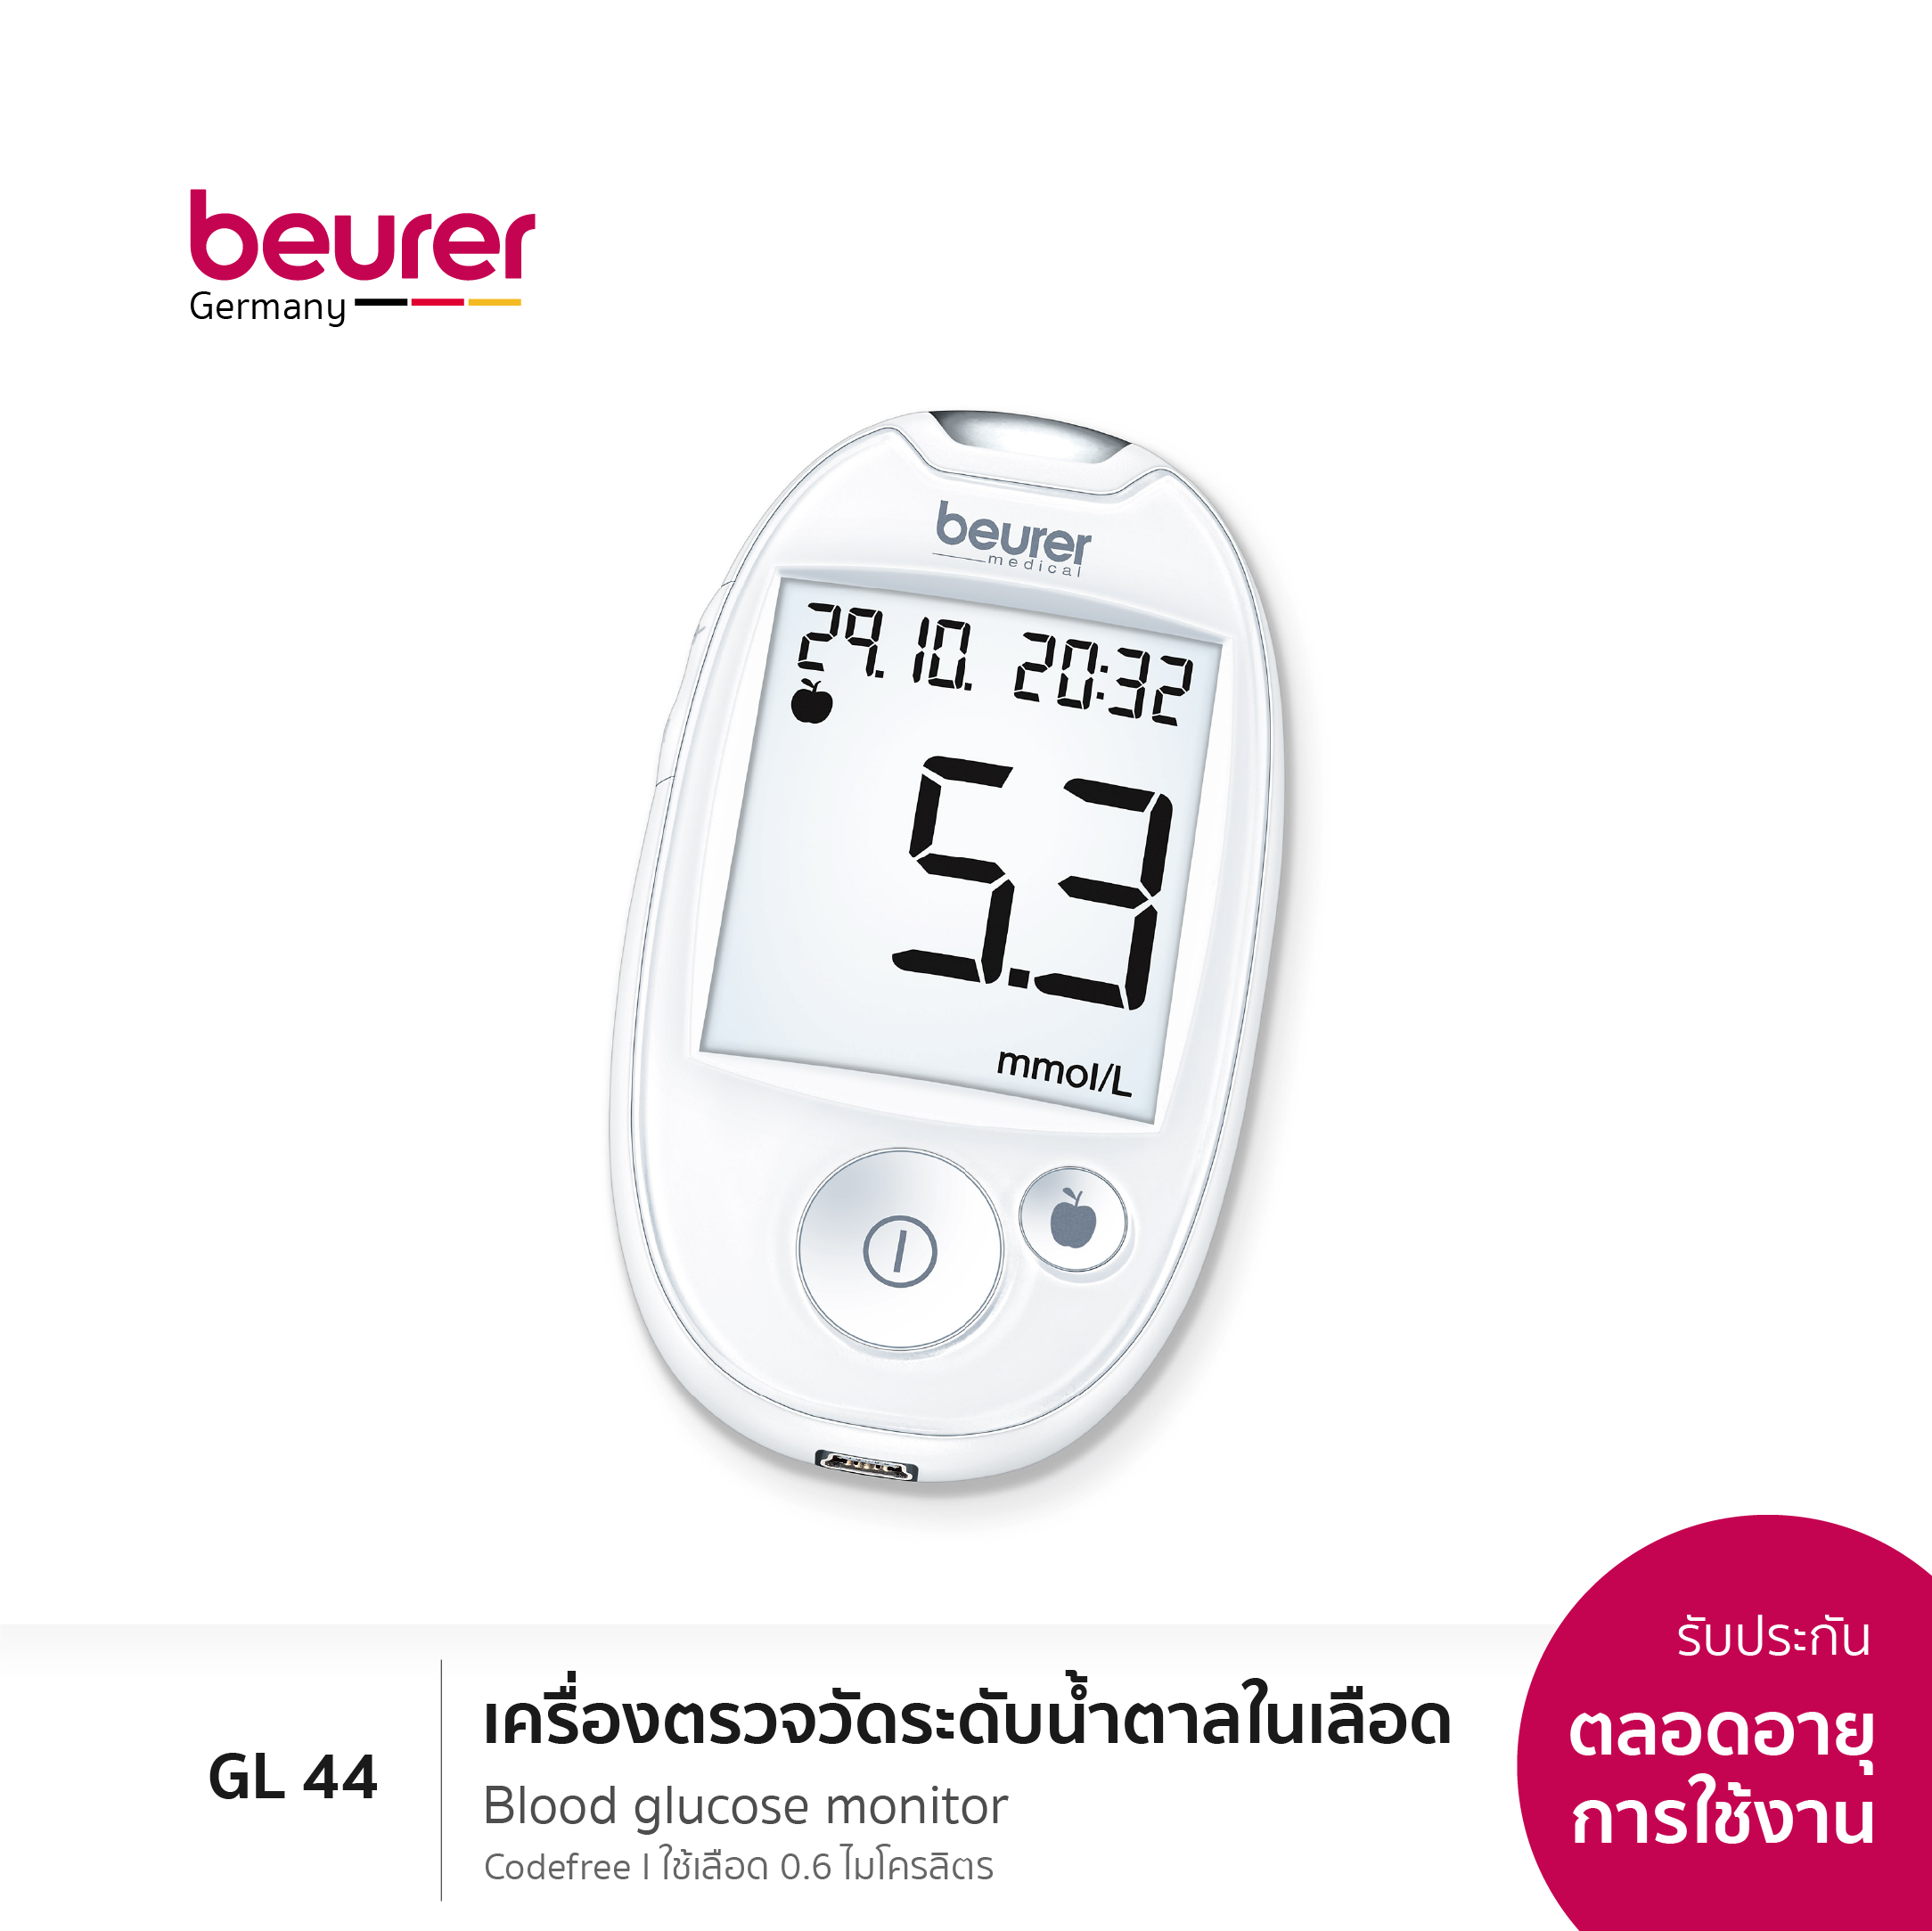 [รับประกันตลอดอายุการใช้งาน] Beurer Blood Glucose Monitor GL 44 เครื่องตรวจวัดระดับน้ำตาลในเลือด